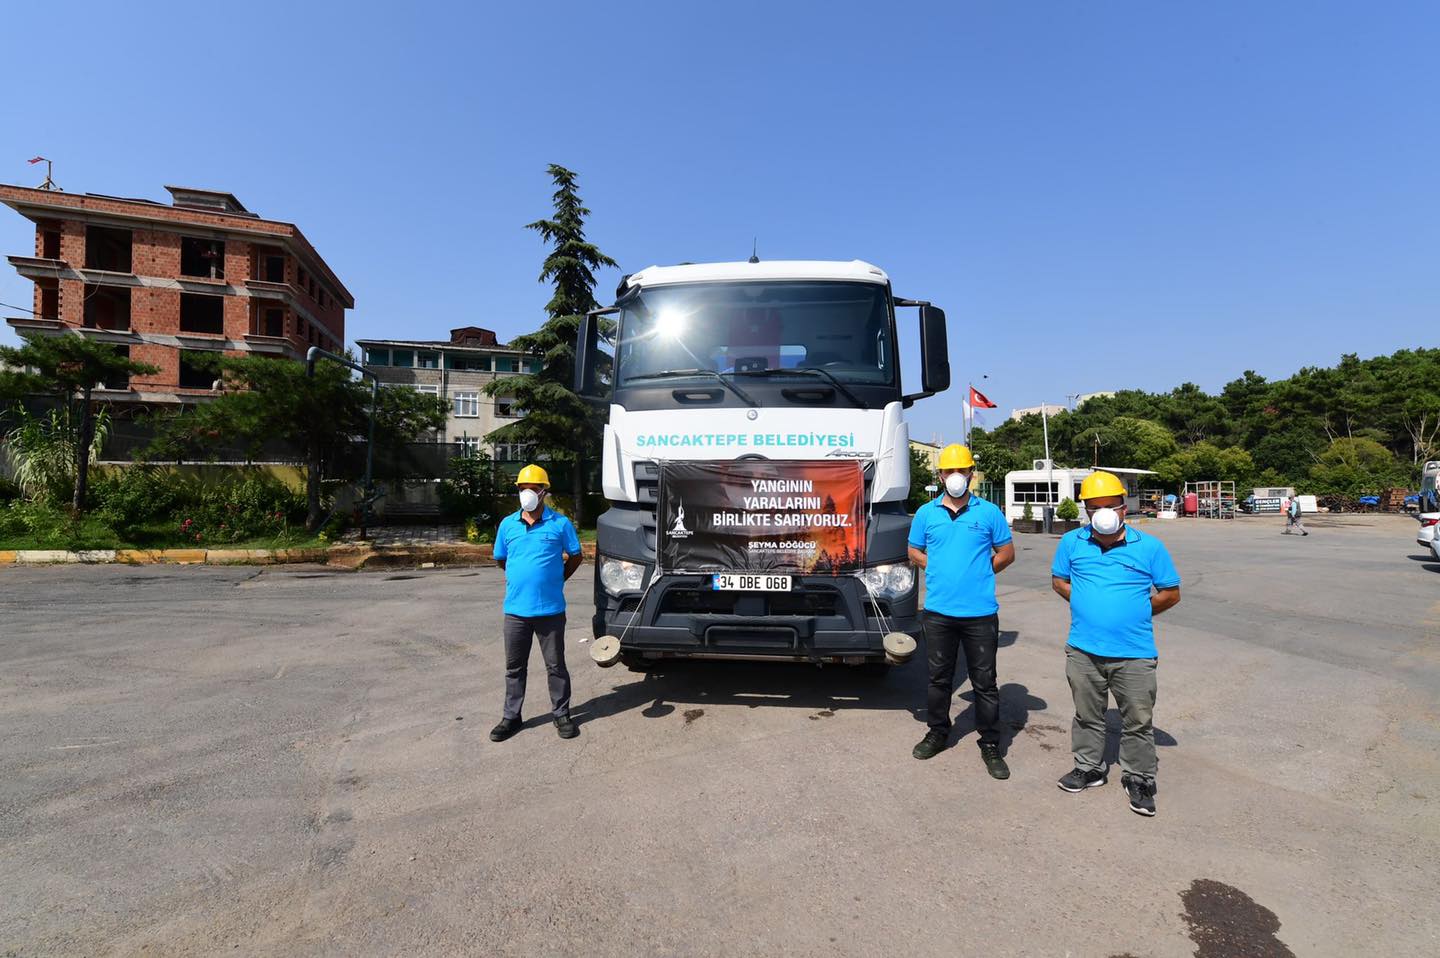 Sancaktepe Belediyesi Manavgat'ta  araç yolladı